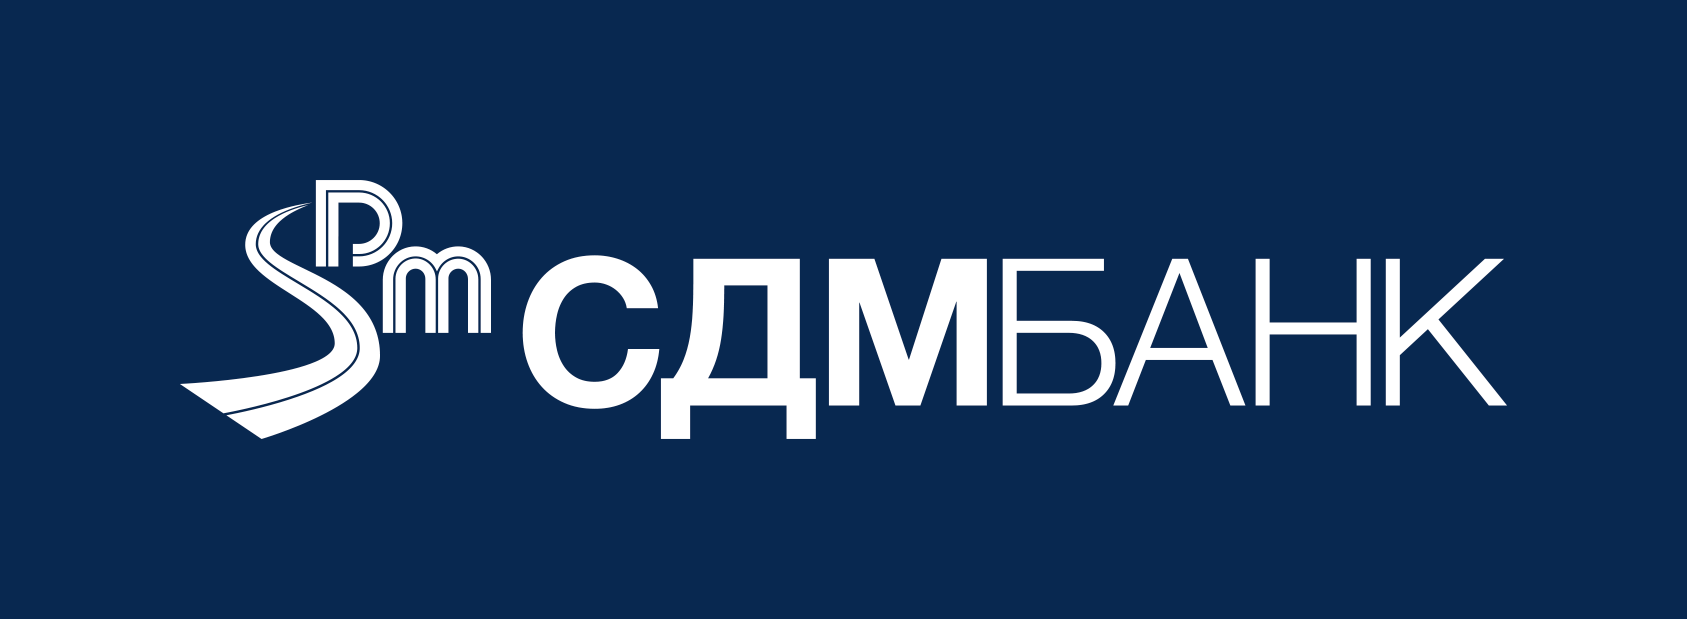 Личный кабинет СДМ-Банка - вход и регистрация